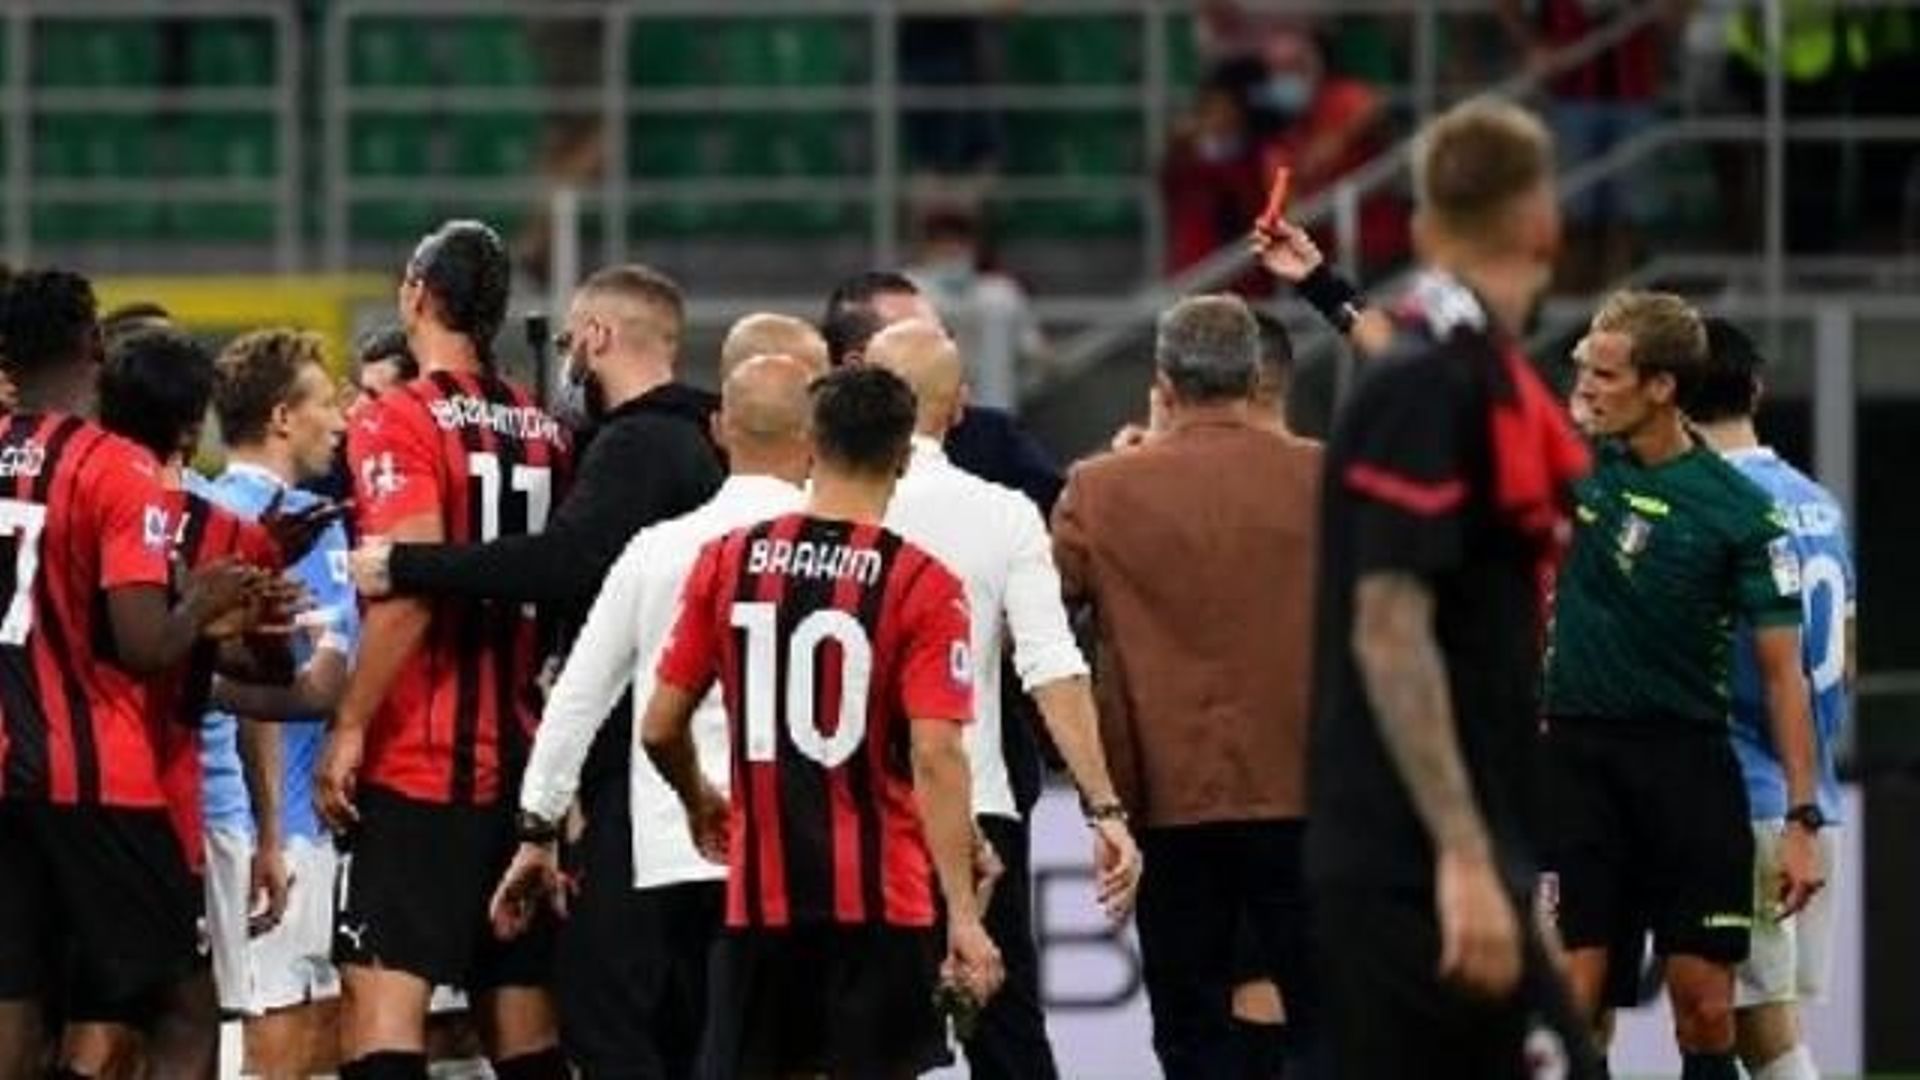 Les Belges à l'étranger - L'AC Milan aligne une troisième victoire, Saelemaekers s'accroche avec Sarri